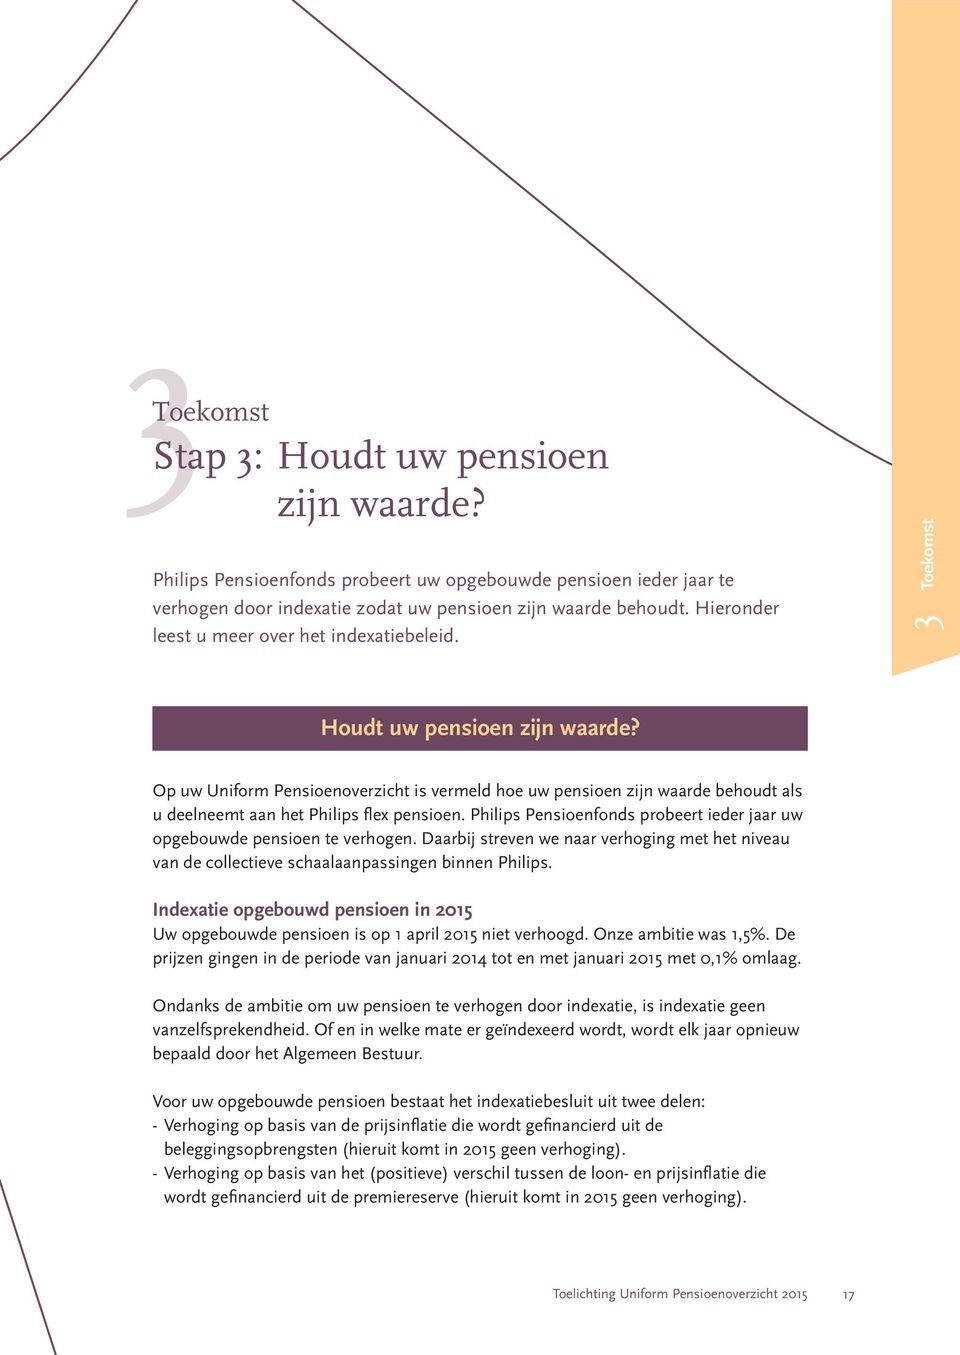 Op uw Uniform Pensioenoverzicht is vermeld hoe uw pensioen zijn waarde behoudt als u deelneemt aan het Philips flex pensioen.